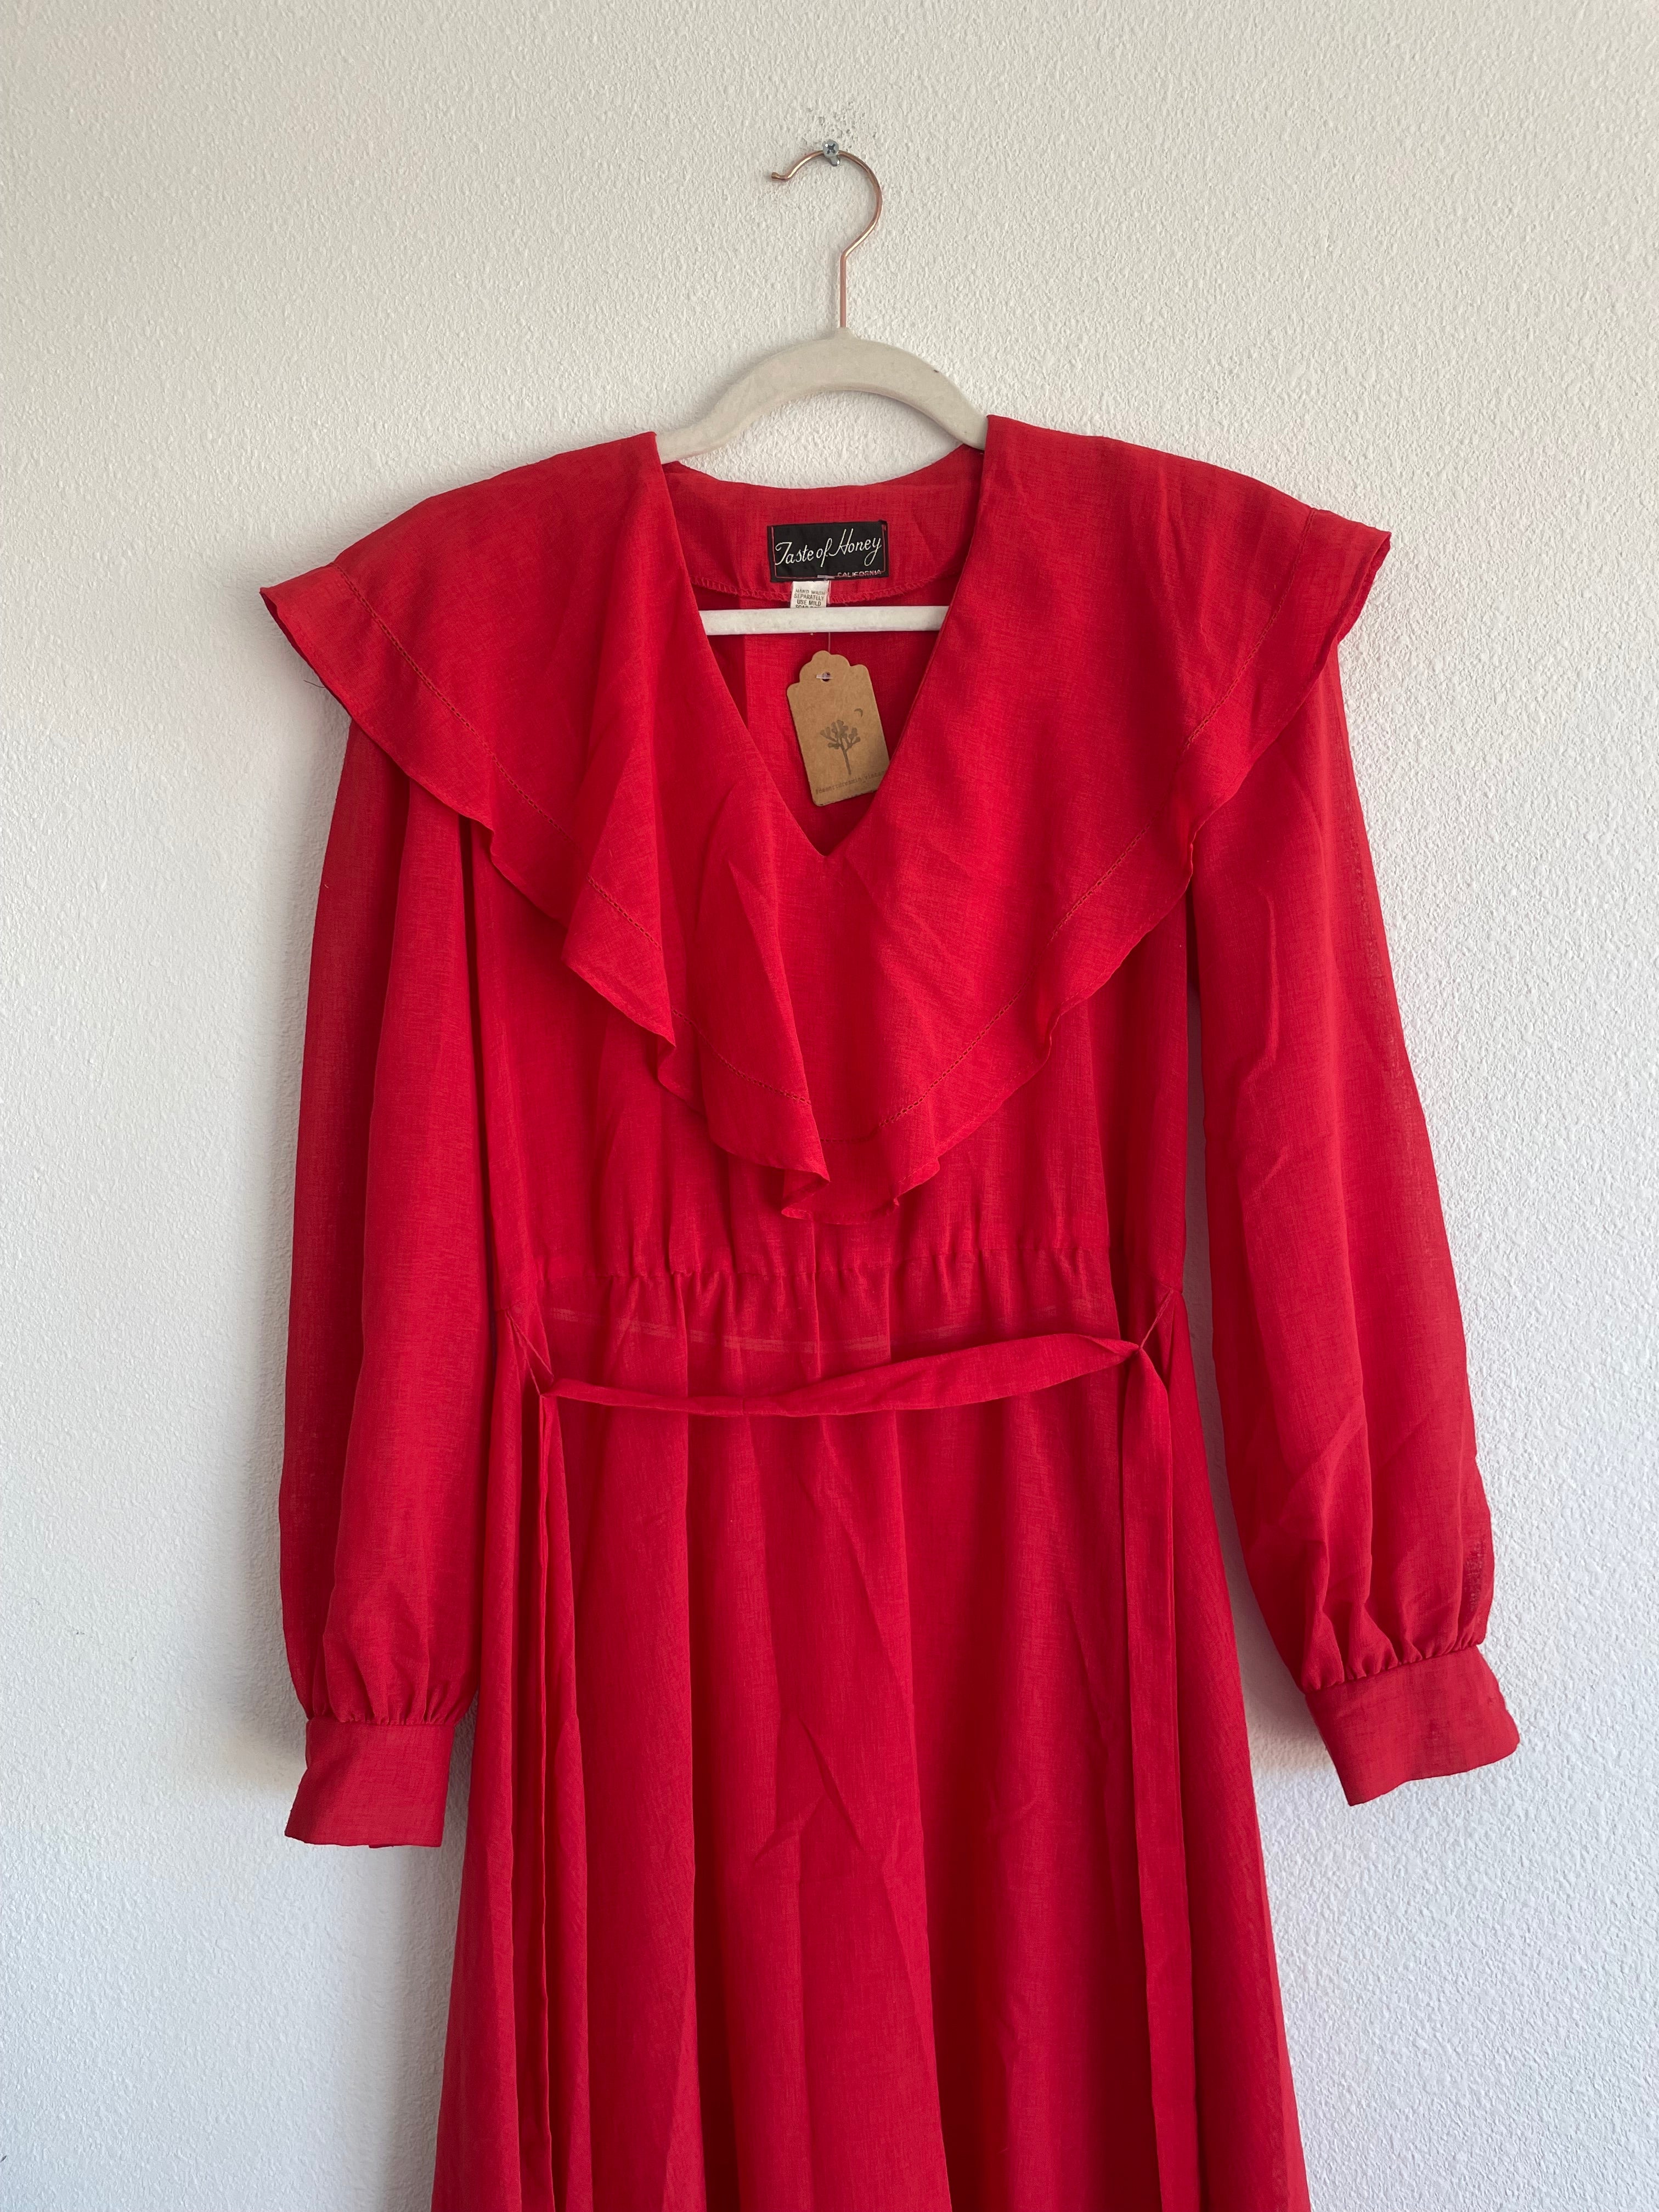 70s Lipstick Red Femme Dress Sz M - L